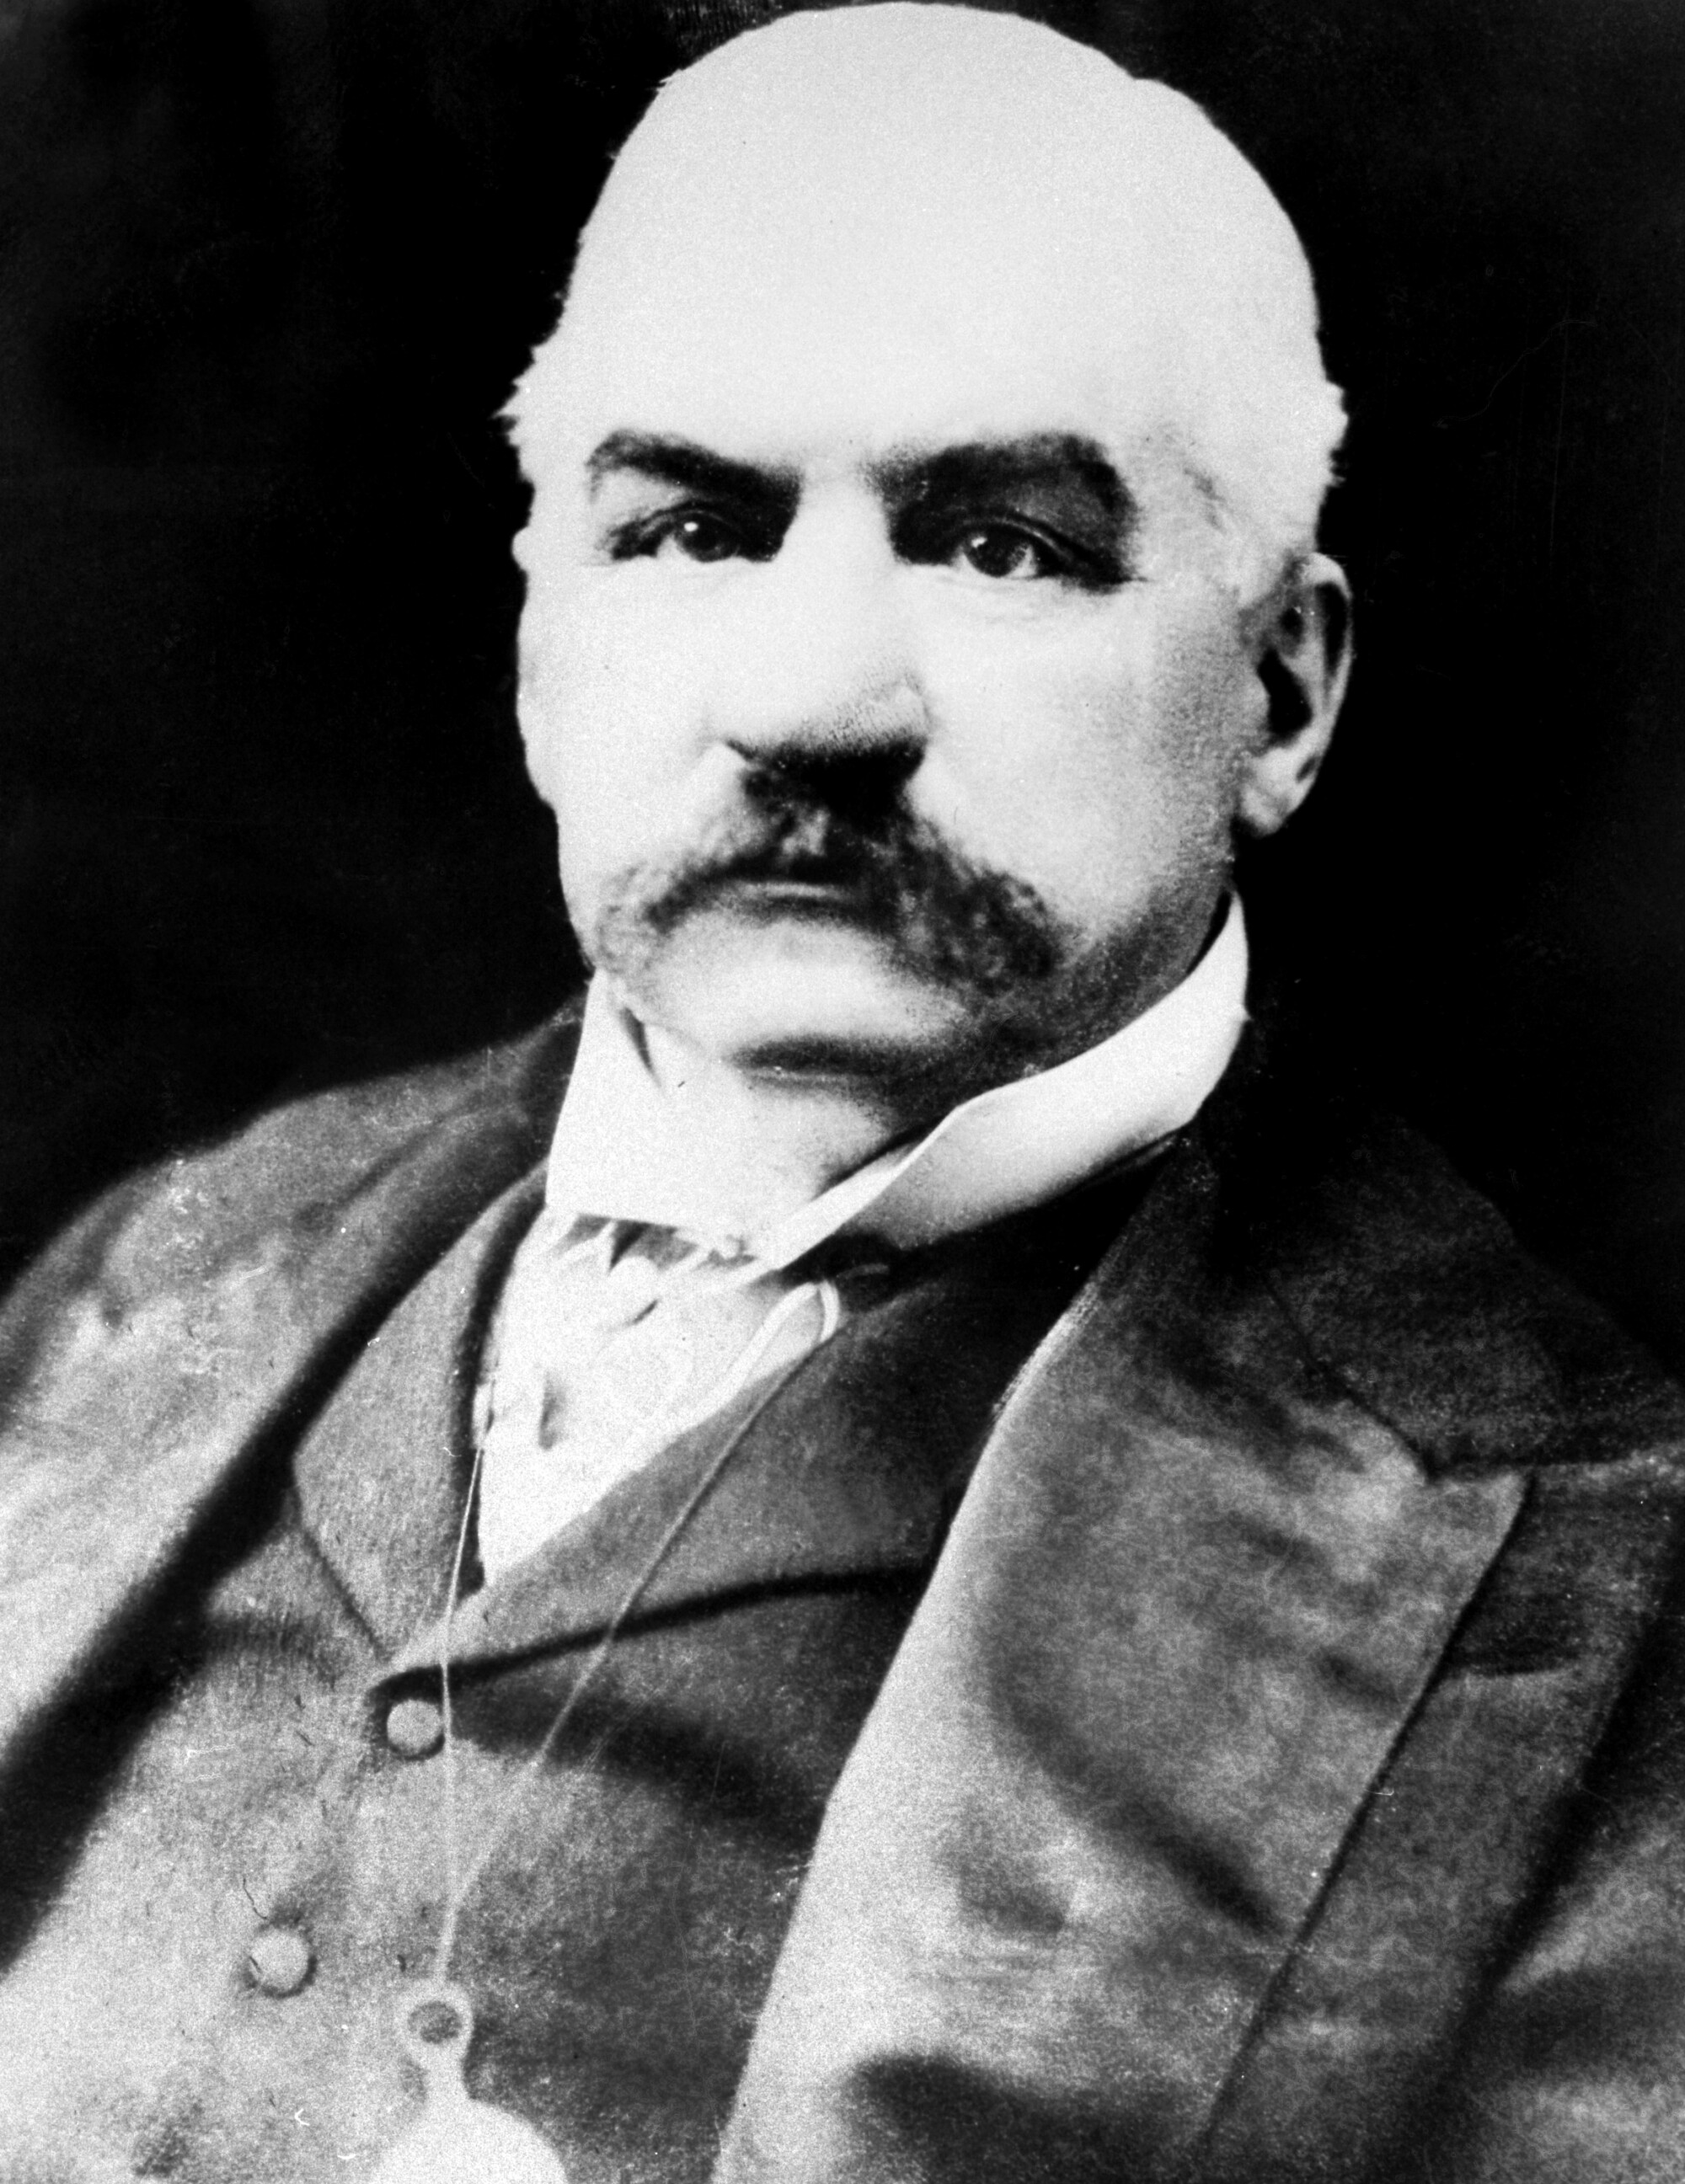 A portrait of J.P. Morgan